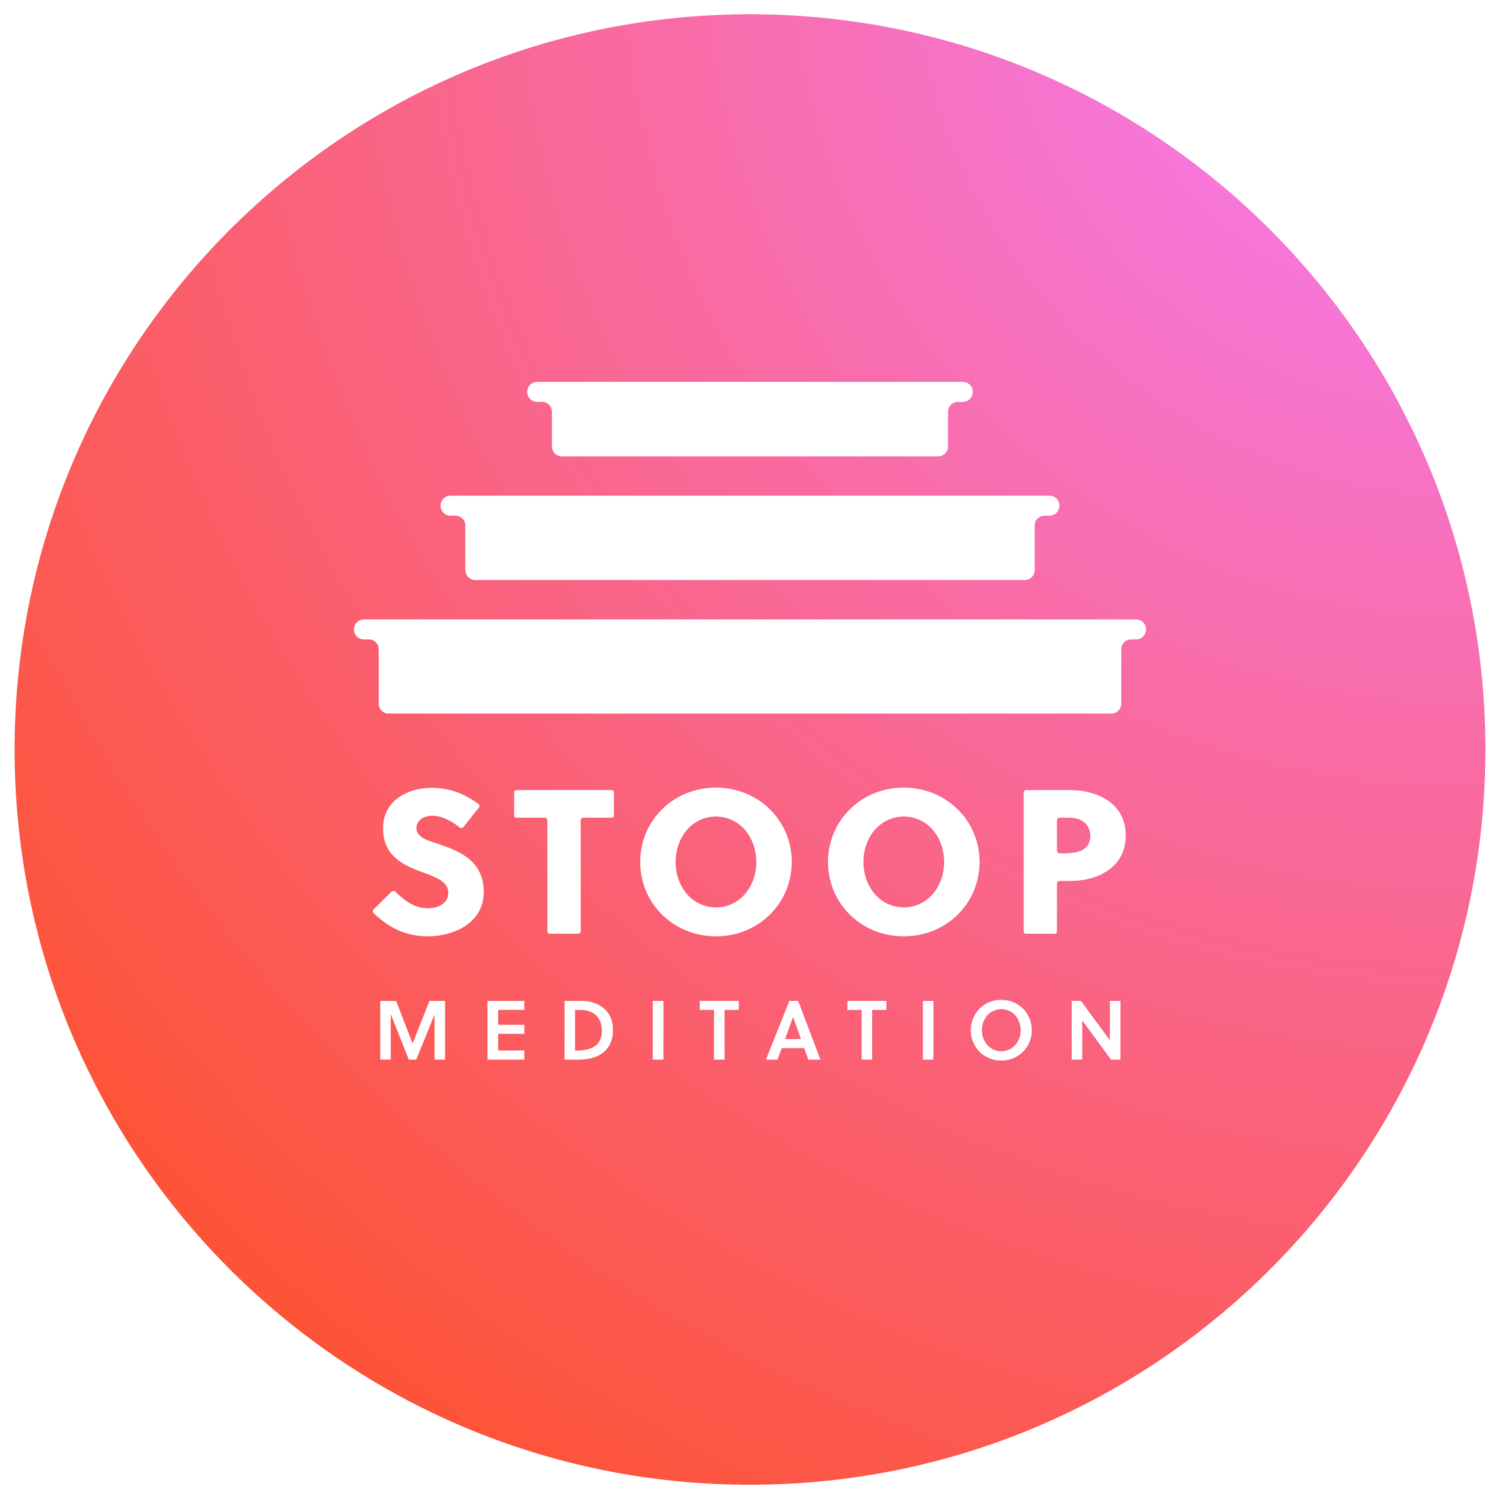 Stoop Meditation